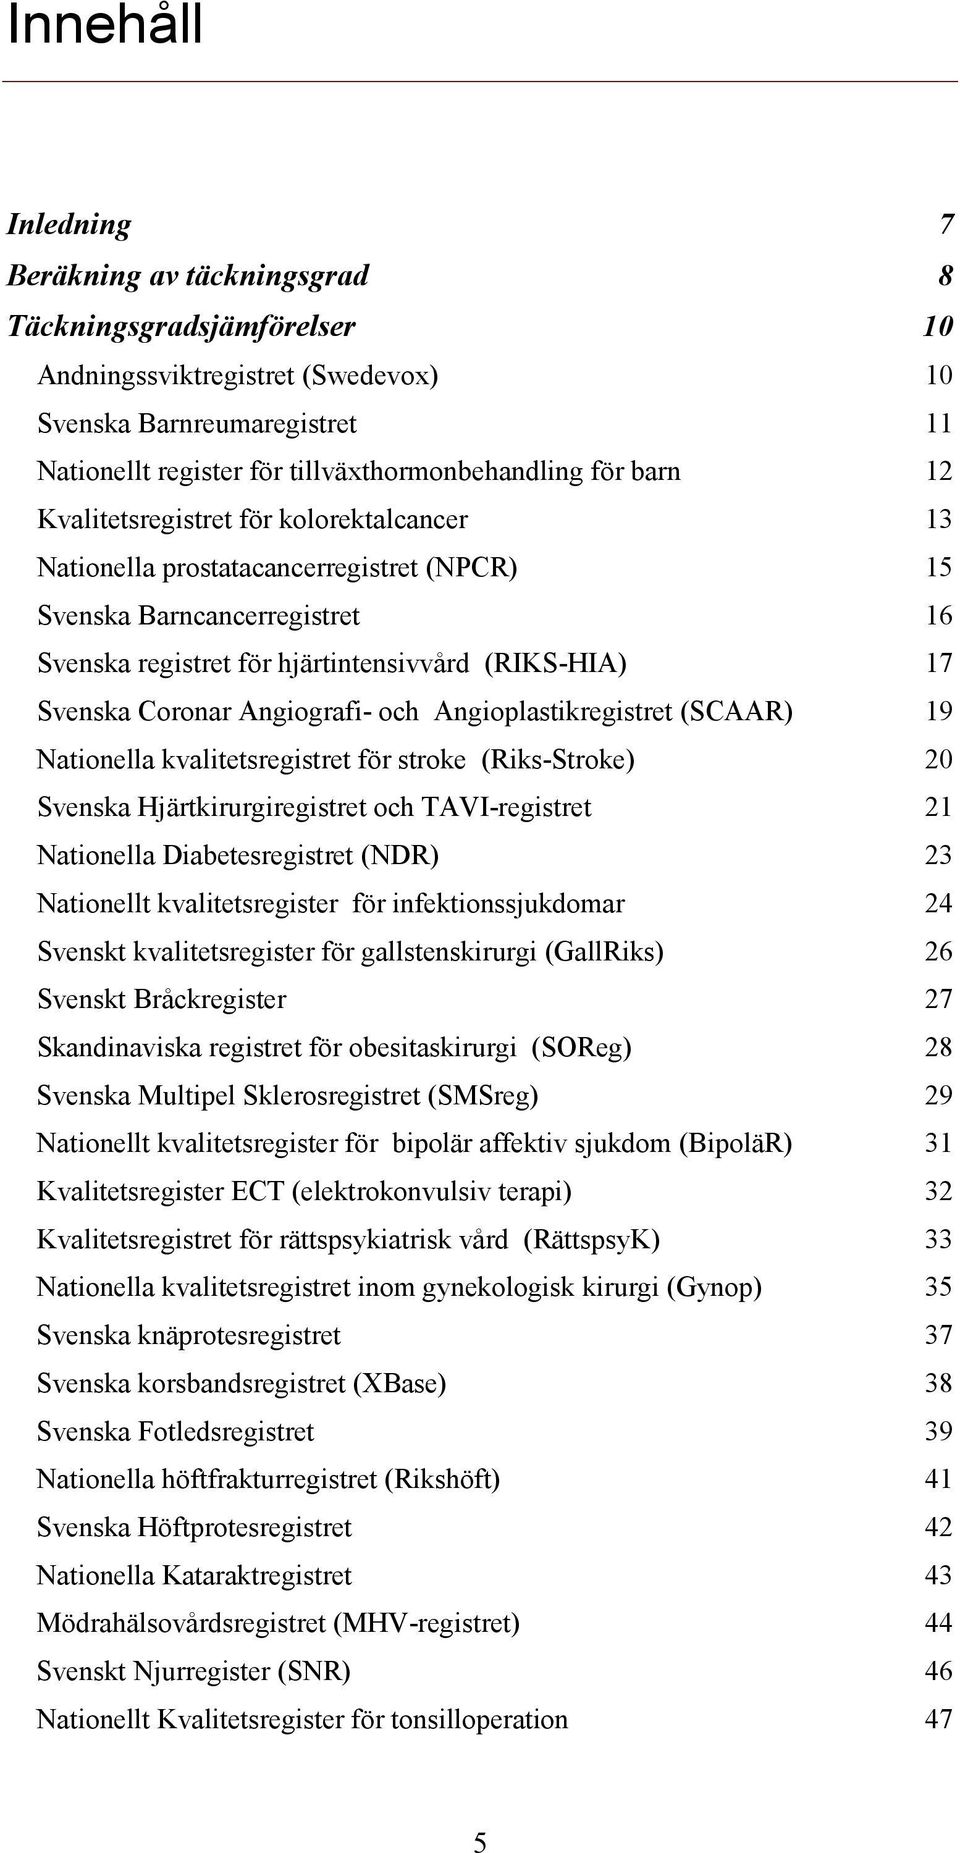 Angiografi- och Angioplastikregistret (SCAAR) 19 Nationella kvalitetsregistret för stroke (Riks-Stroke) 20 Svenska Hjärtkirurgiregistret och TAVI-registret 21 Nationella Diabetesregistret (NDR) 23